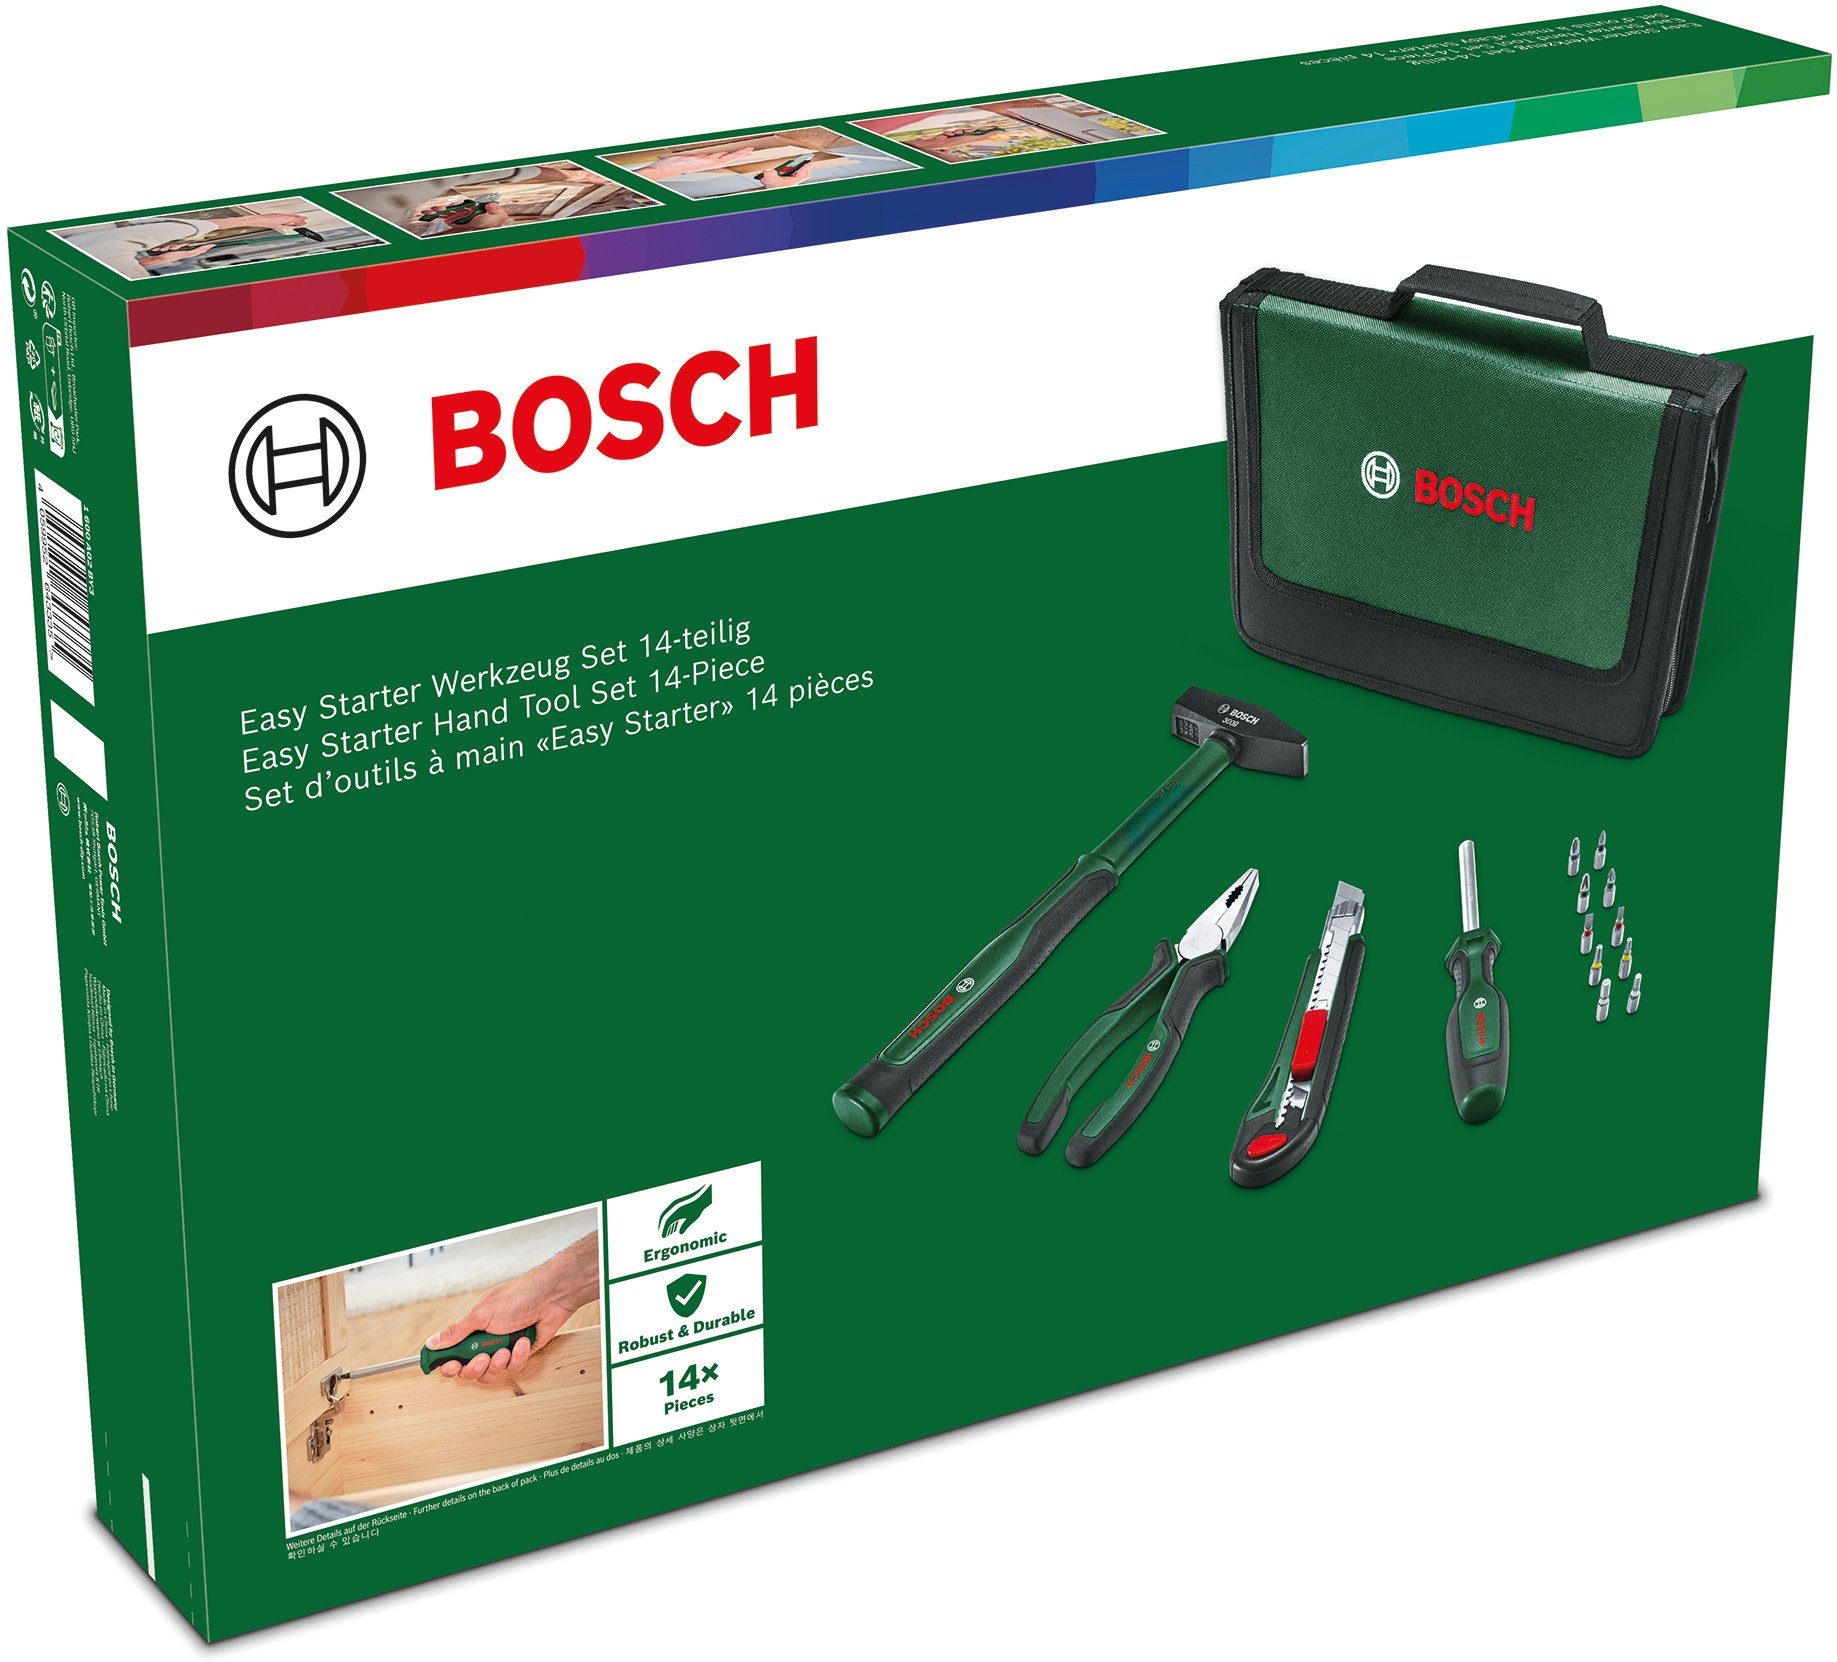 Werkzeugset Set, Garden Werkzeug & Bosch Home 14-teilig Easy Starter